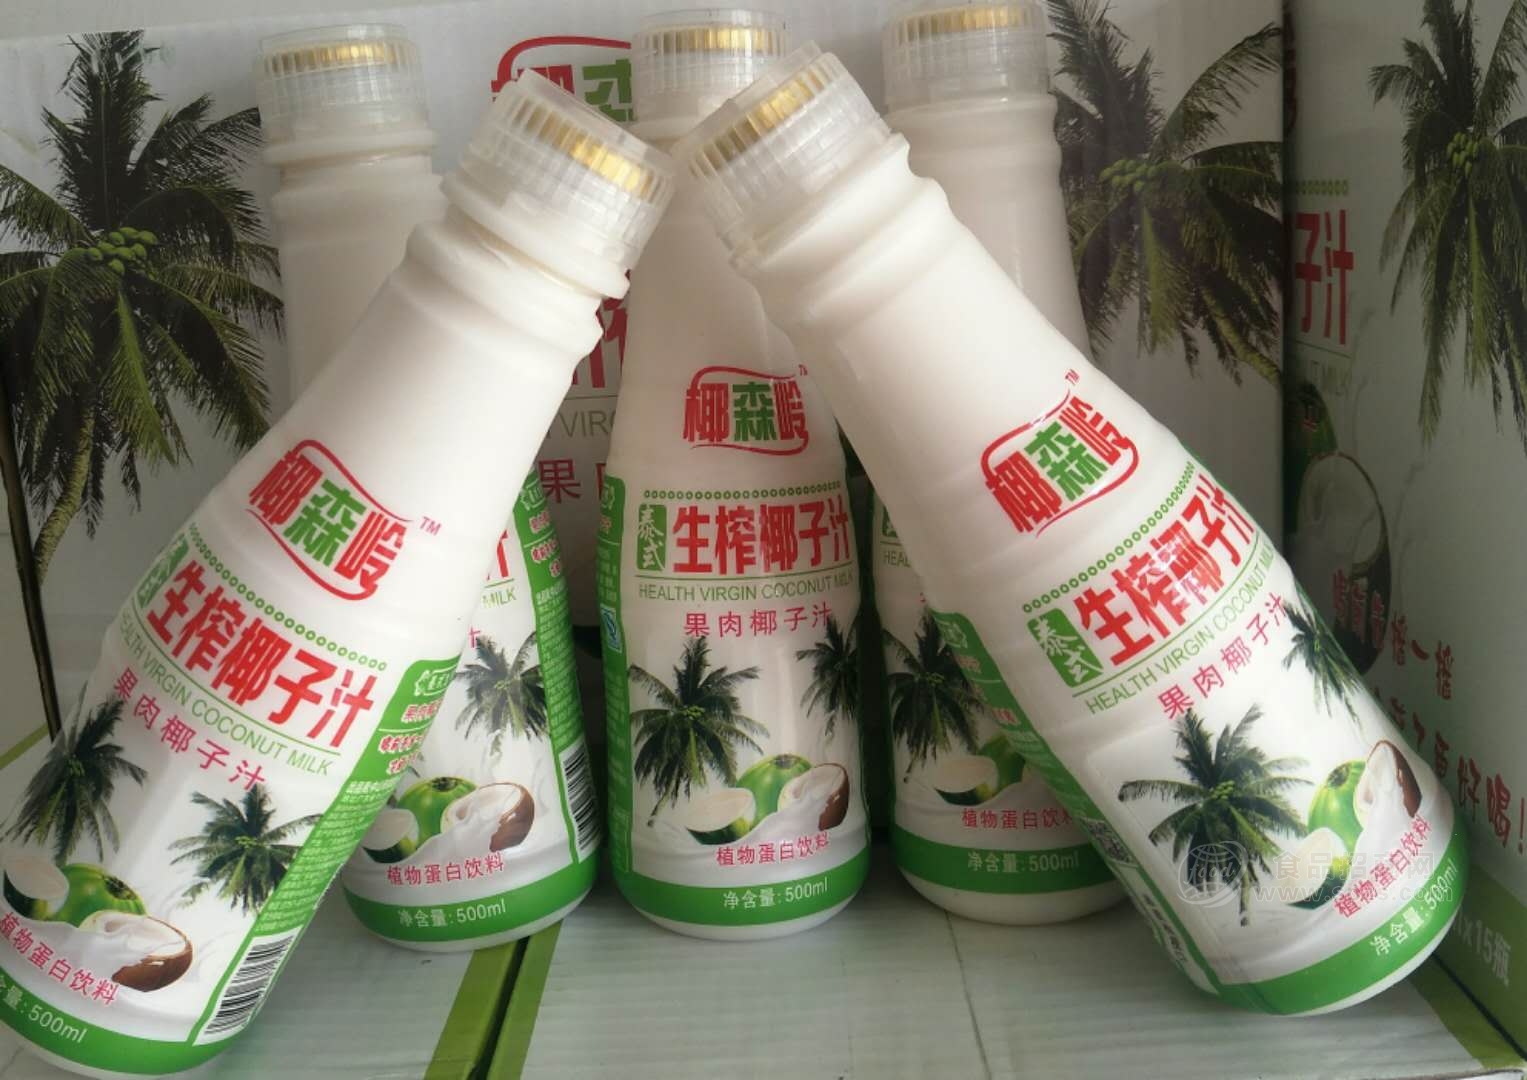 椰森岭椰子汁 泰式生榨椰子汁 果肉椰汁 500ml 瓶装